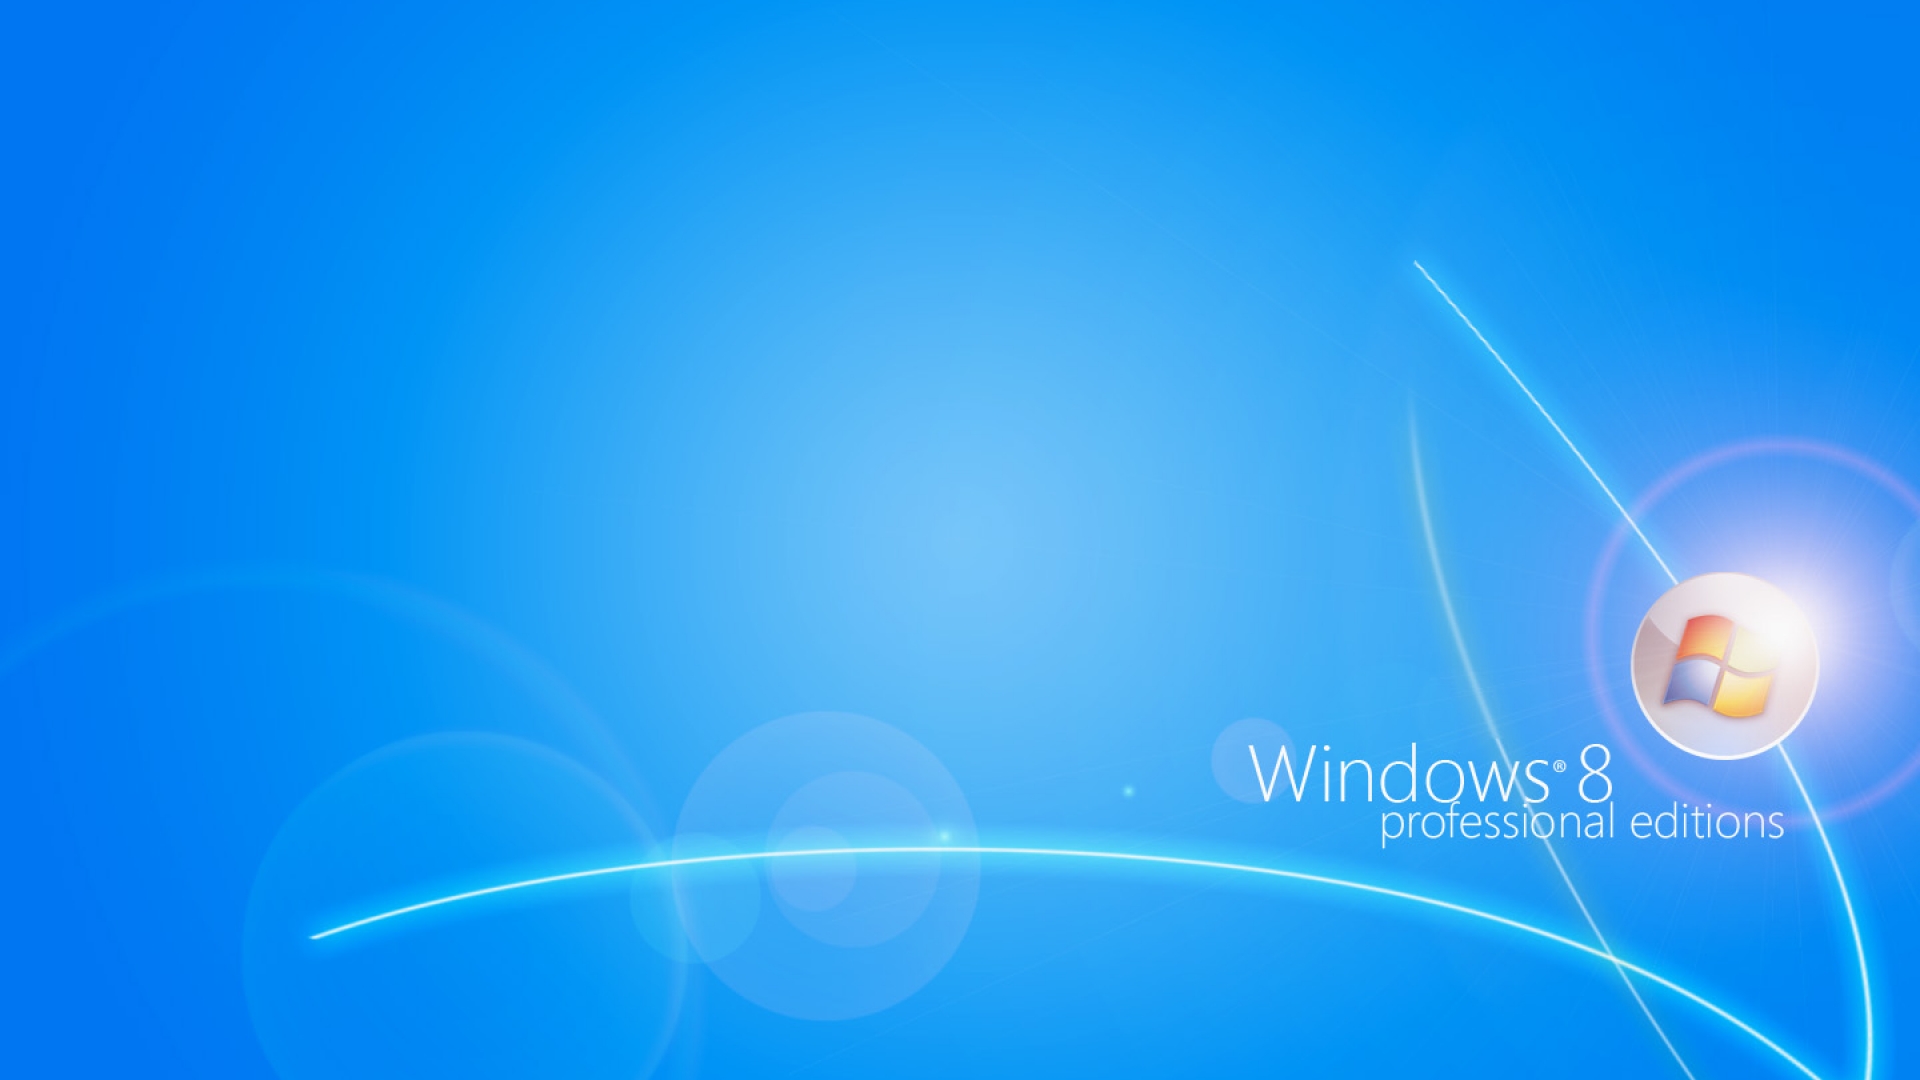 Nâng cấp hình nền cho máy tính Windows 8 Professional của bạn với những hình ảnh sáng tạo và độc đáo nhất. Trang web của chúng tôi cung cấp một bộ sưu tập đa dạng, đáp ứng được nhu cầu của người dùng Windows 8 Professional của nhiều loại. Khám phá ngay hình ảnh liên quan đến từ khóa \